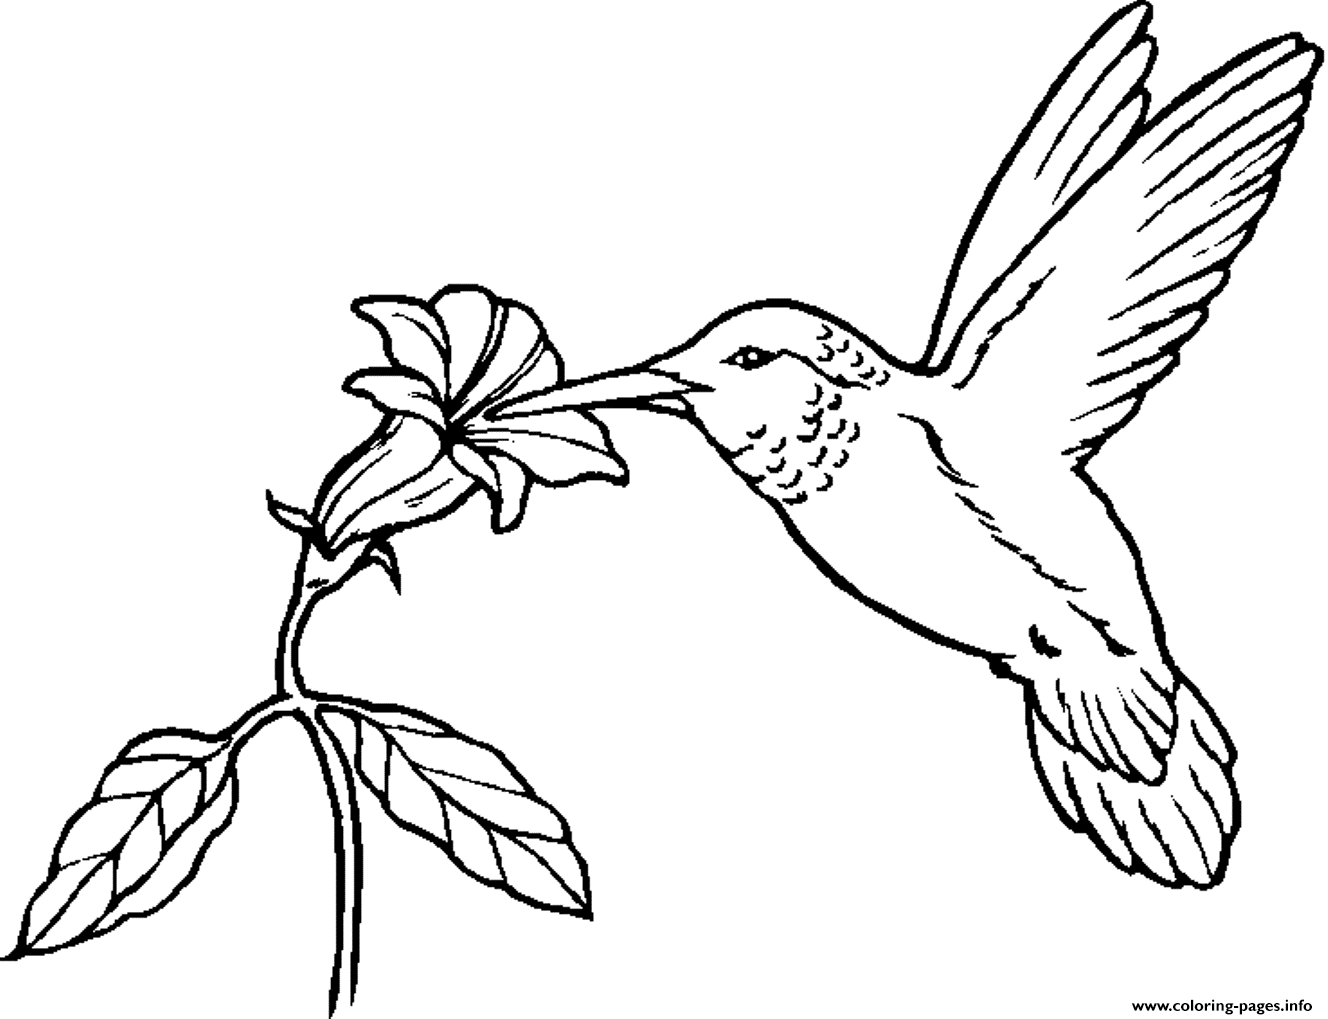 Animal Bird  Hummingbirdf7e6 coloring